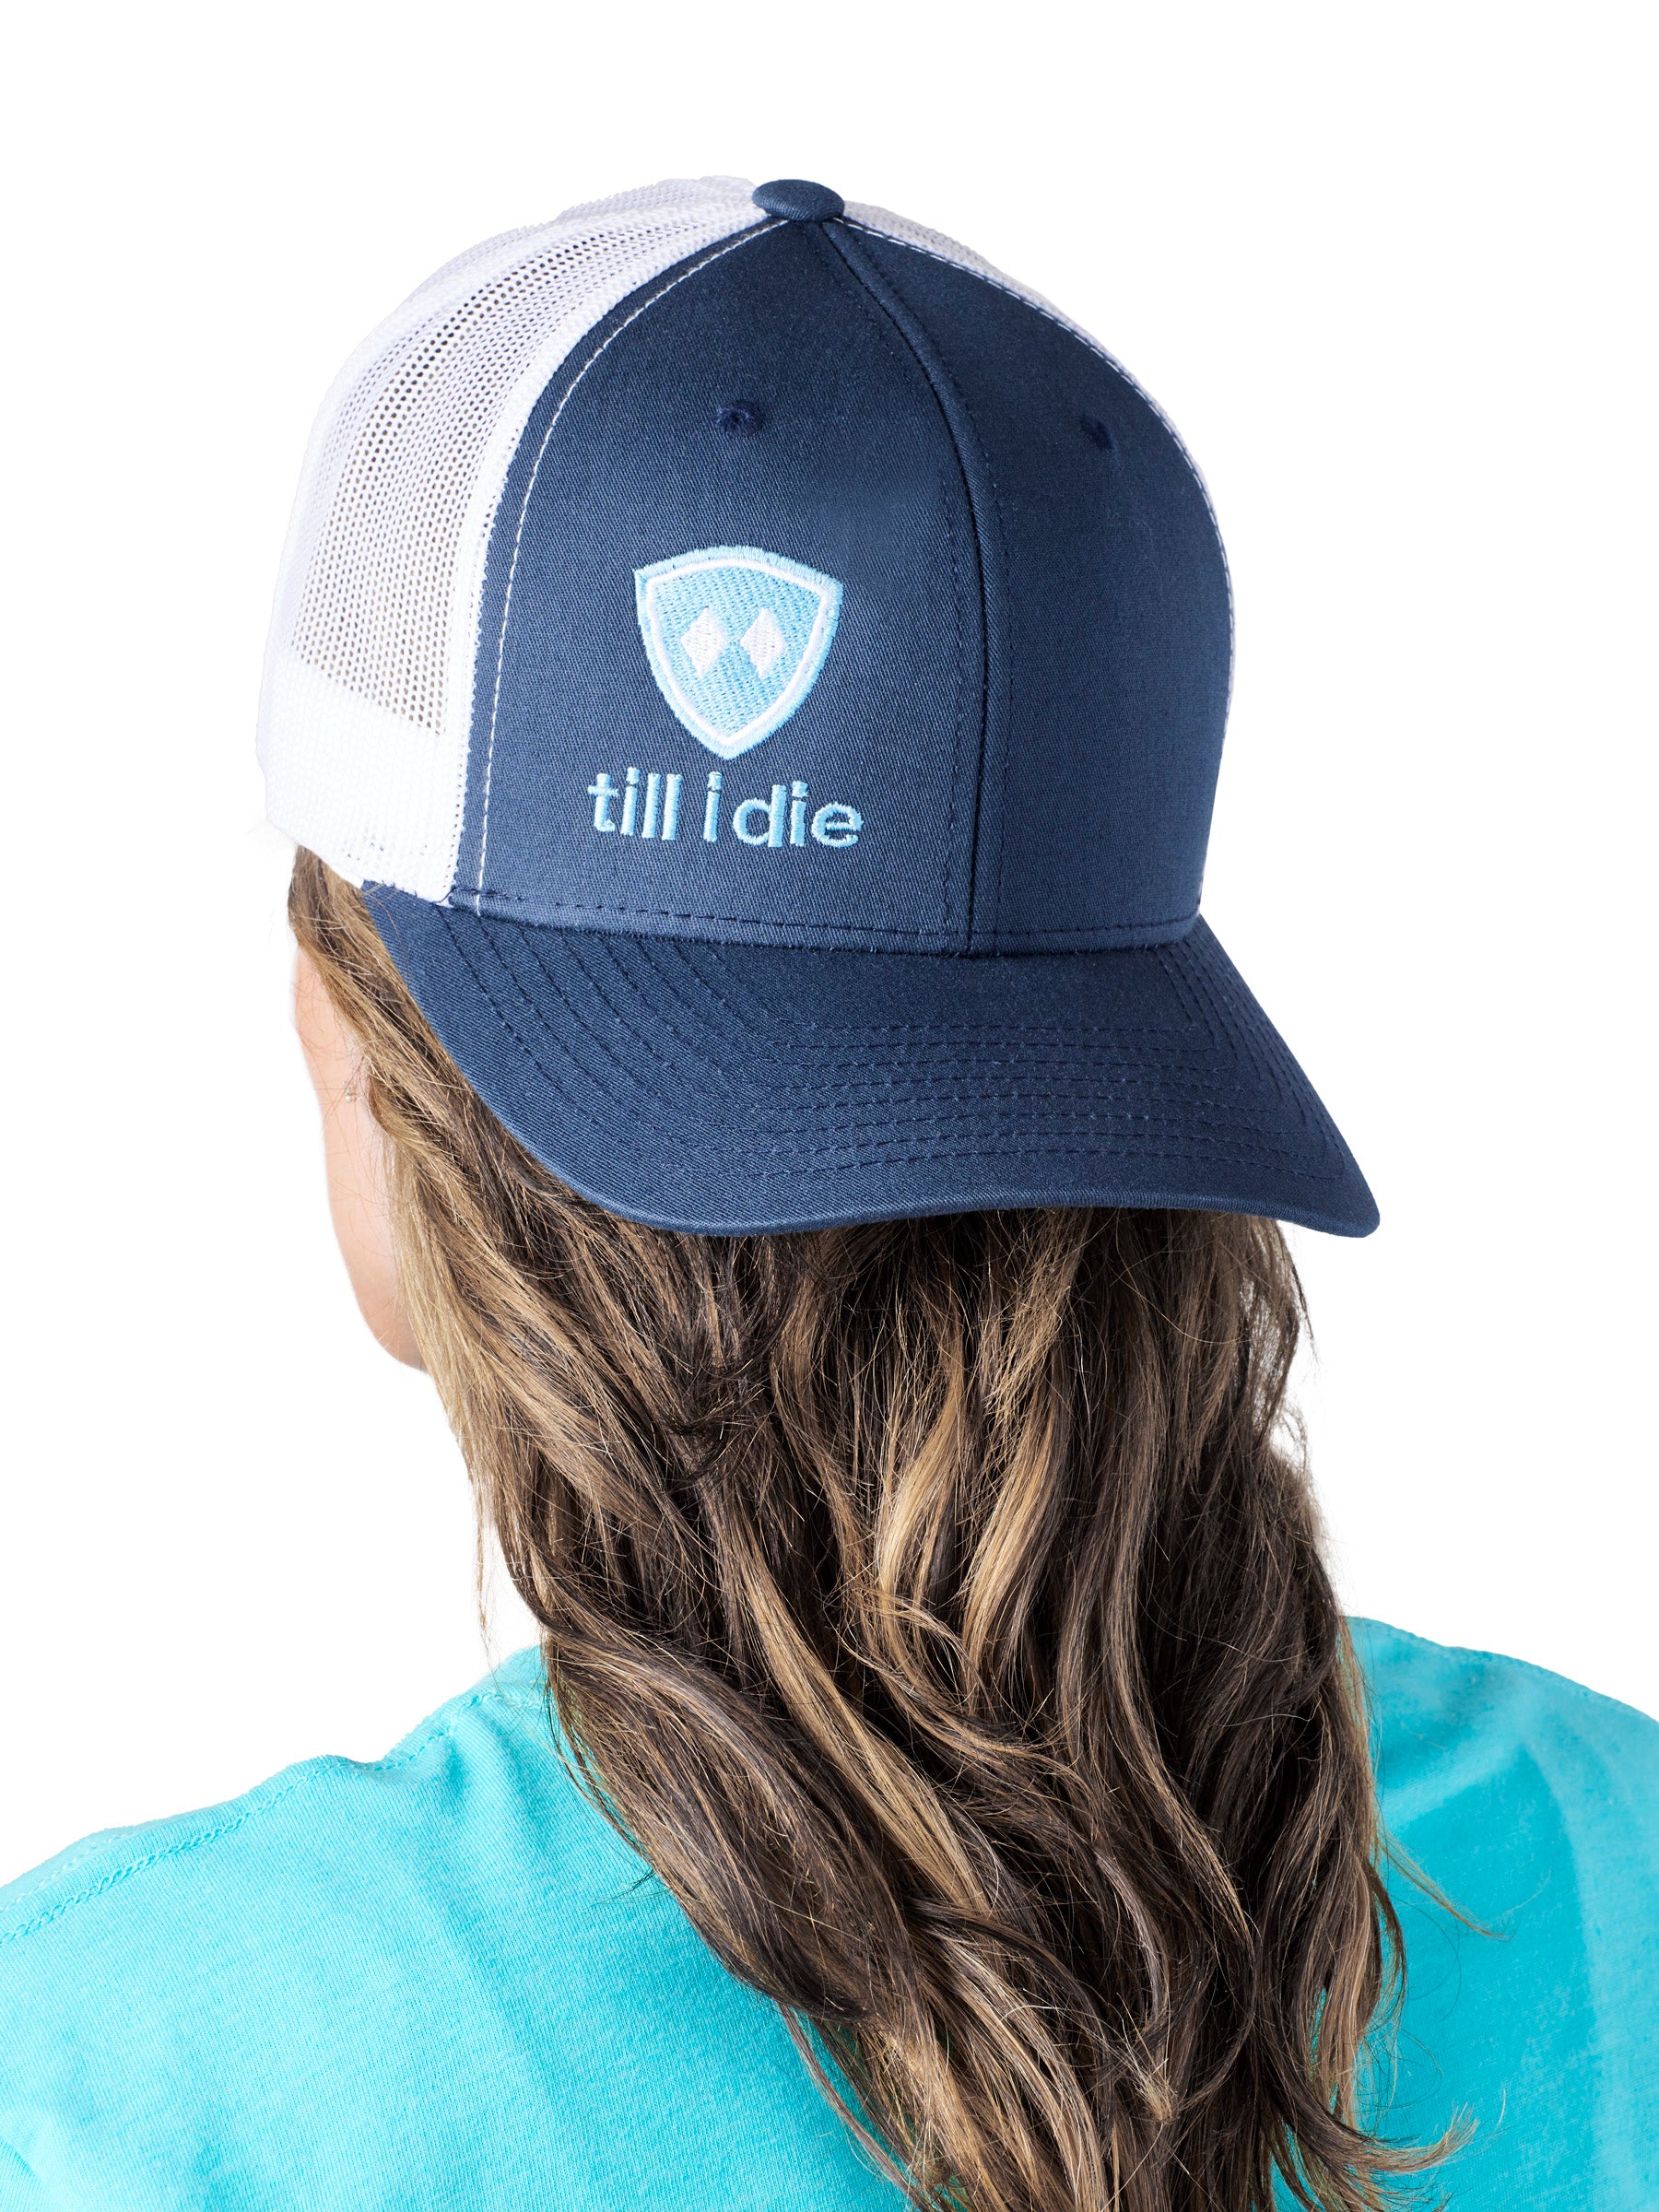 Till I Die Logo // Classic Trucker Hat // Navy with Light Blue & White